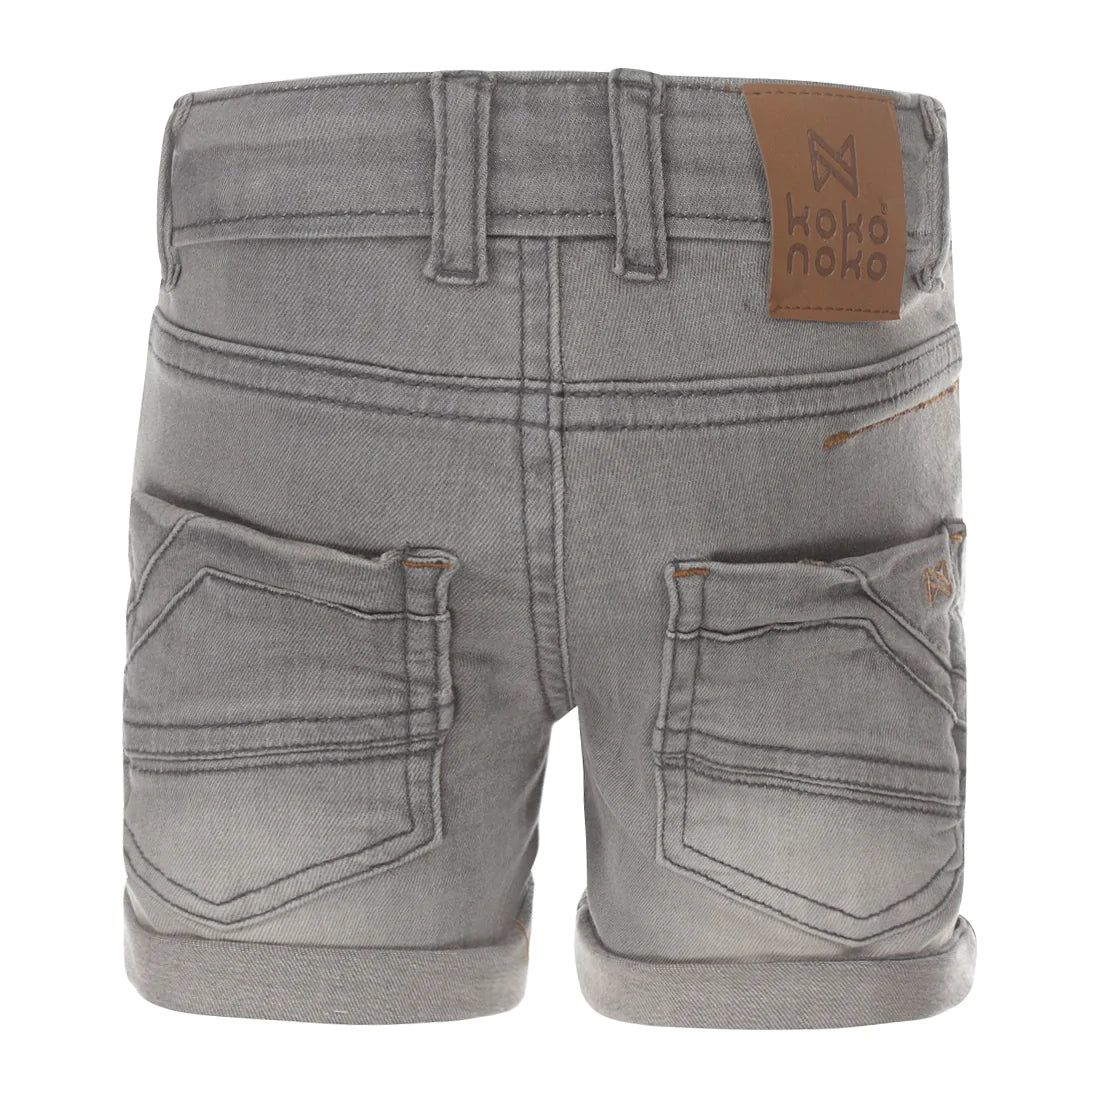 Jongens Jeans shorts van Koko Noko in de kleur Grey jeans in maat 128.